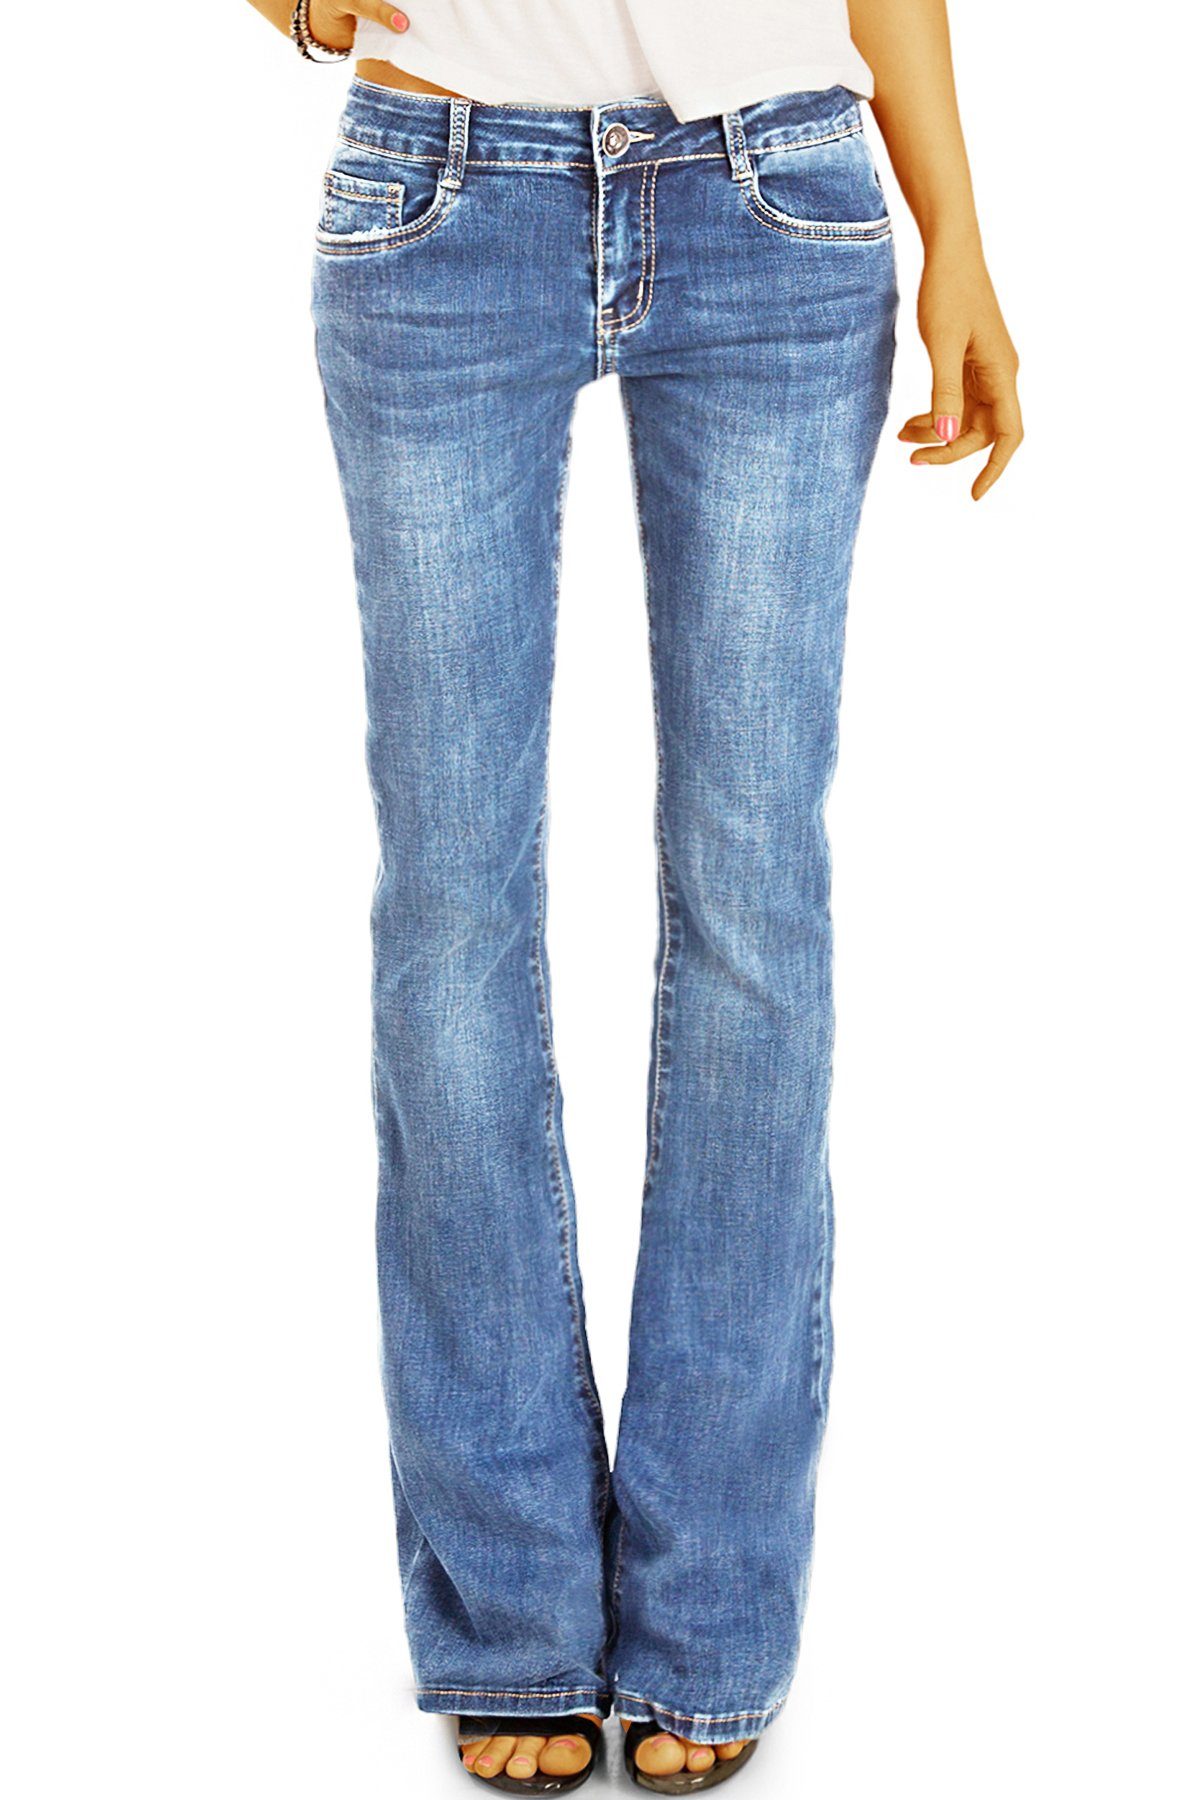 5-pocket waist in Damenhose, Bein j16p und ausgestelltes denimblau medium Bootcut-Jeans dunkelblau be styled